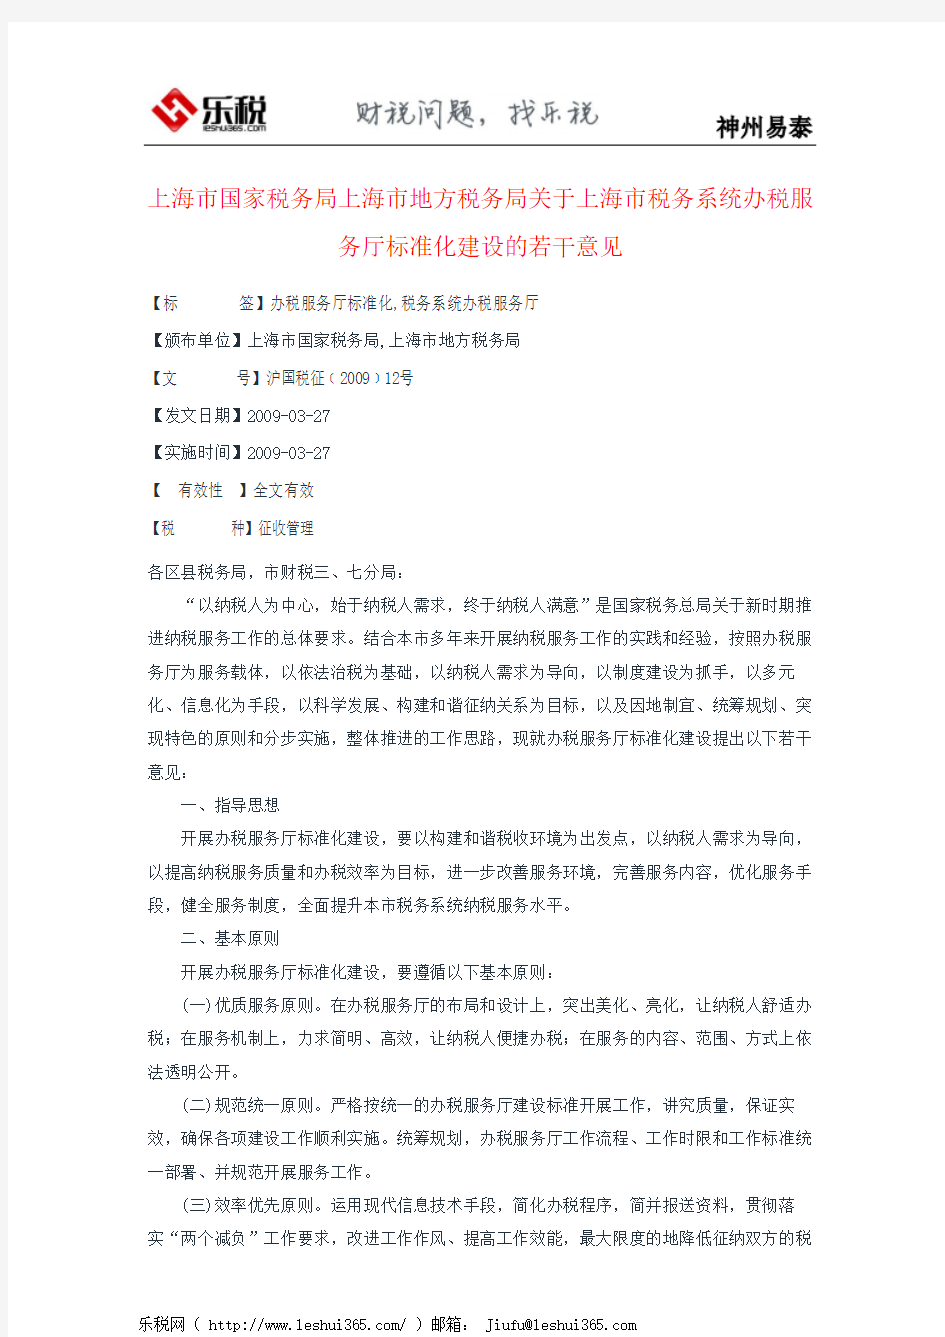 上海市国家税务局上海市地方税务局关于上海市税务系统办税服务厅